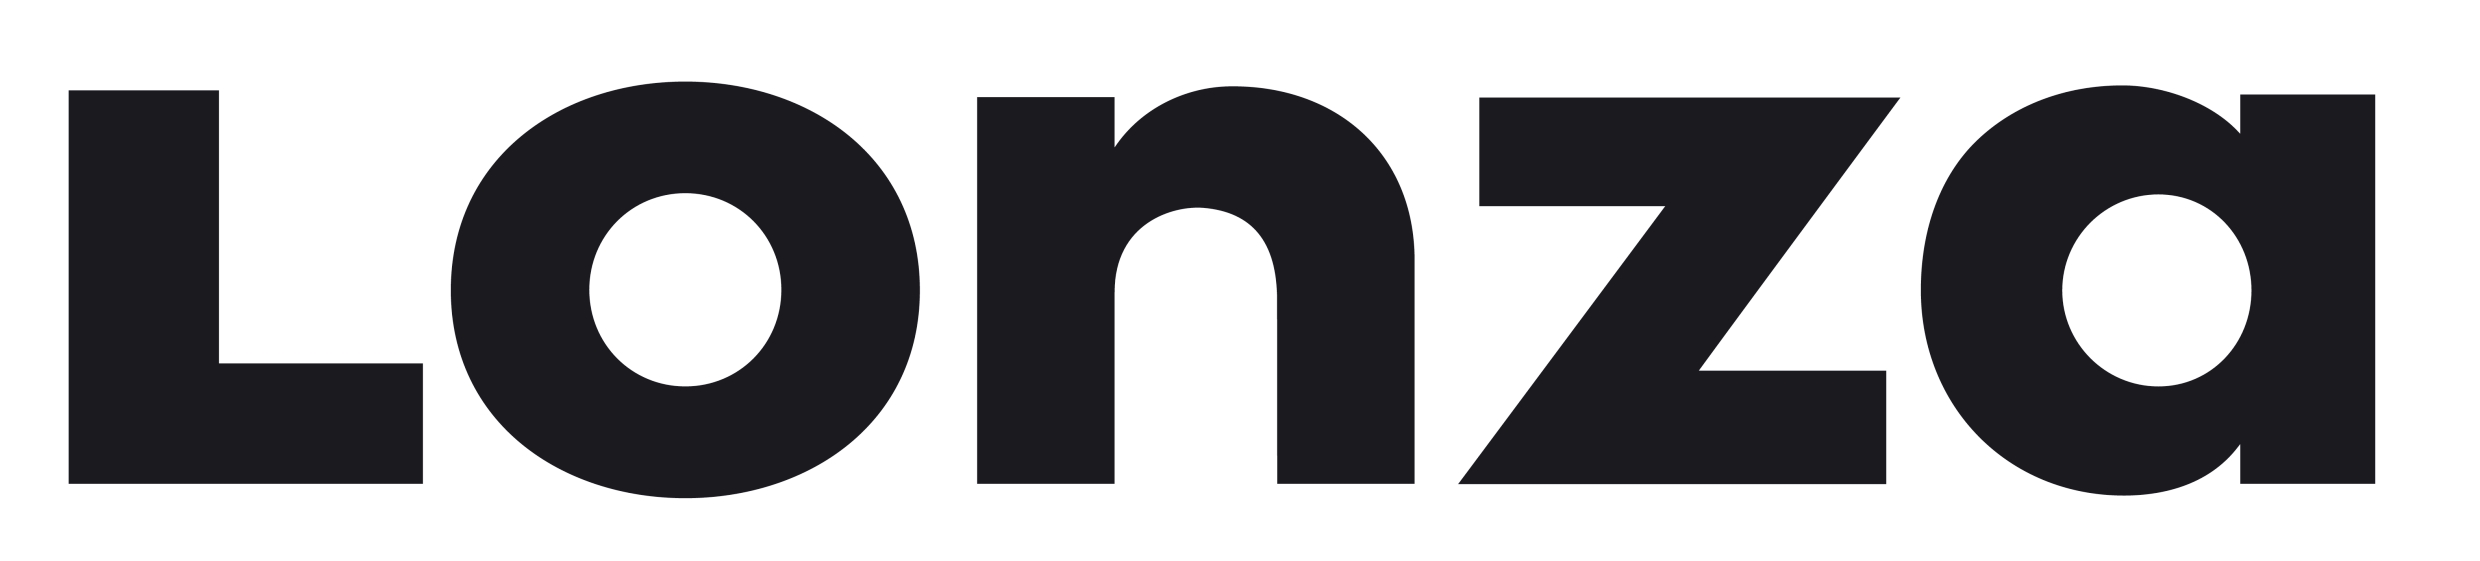 lonza-group-ag-logo.jpg